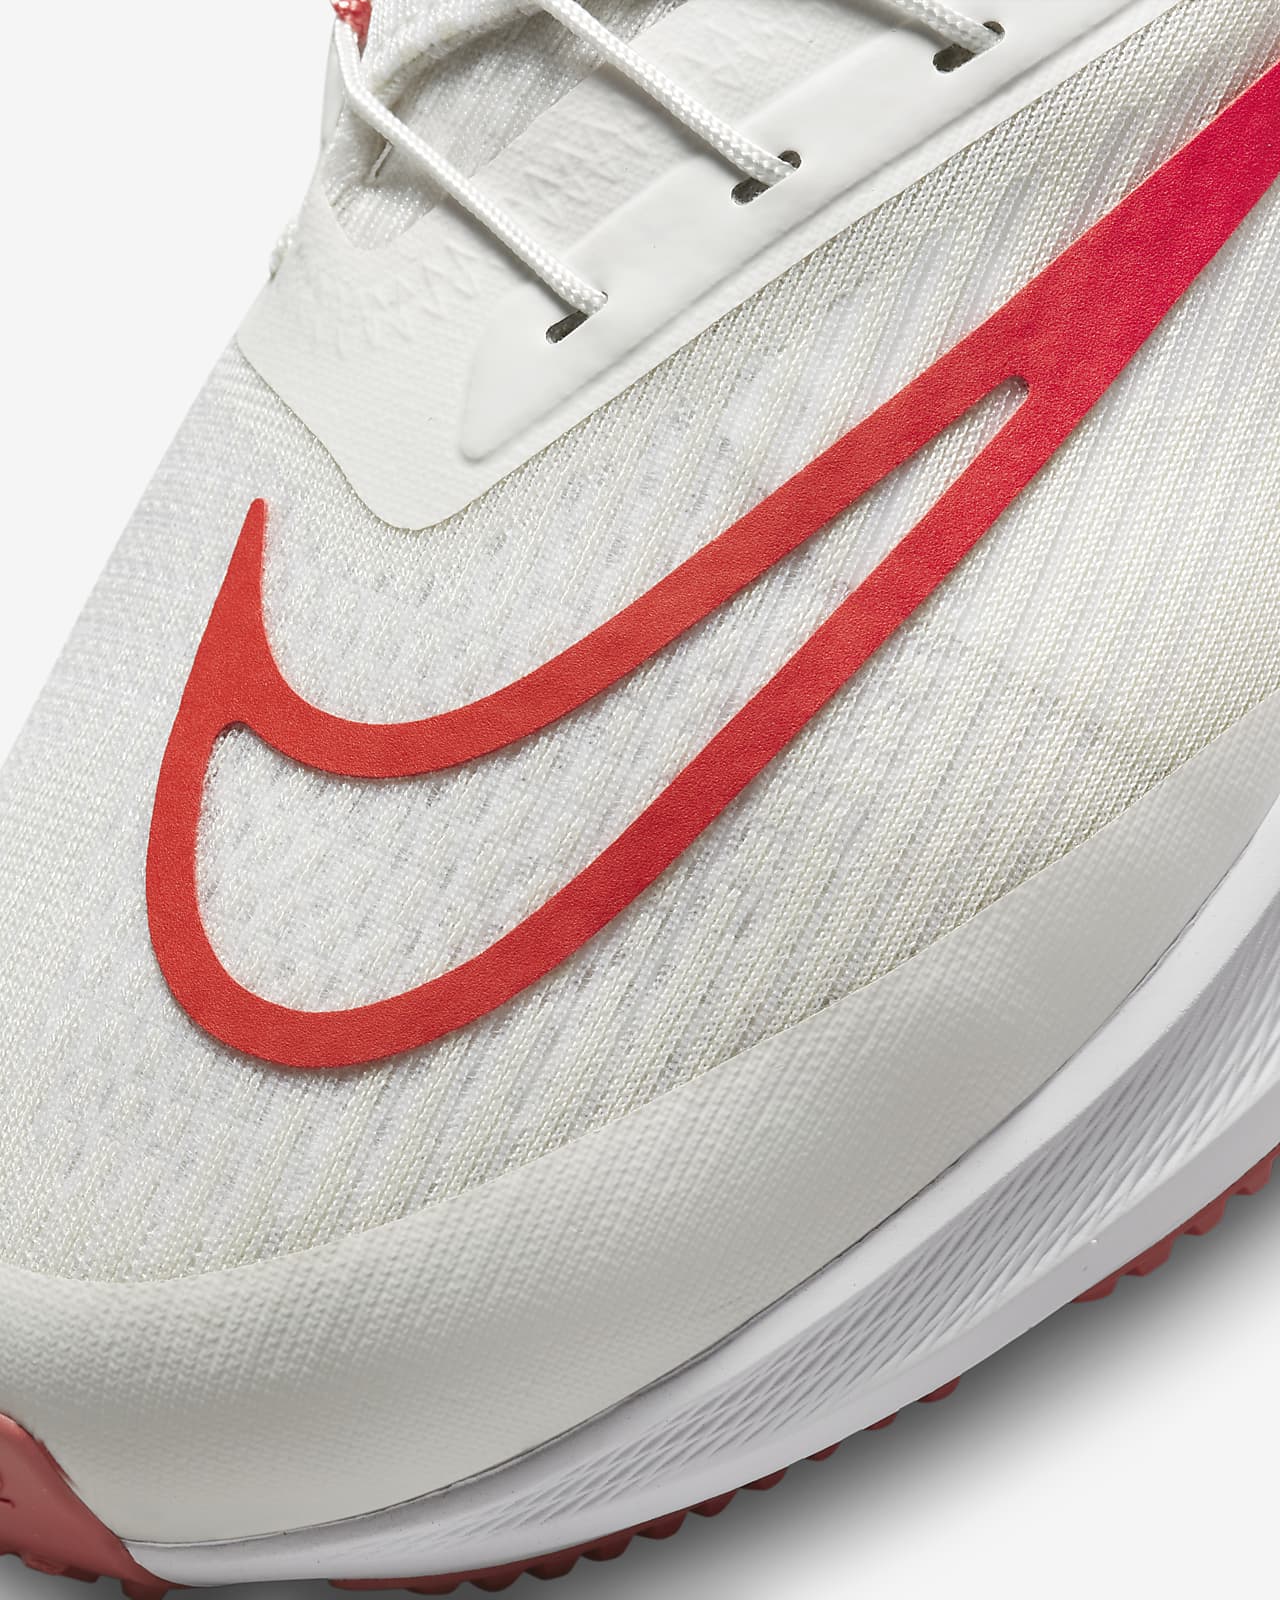 Nike FlyEase Zapatillas de running asfalto fáciles de poner y quitar - Hombre. Nike